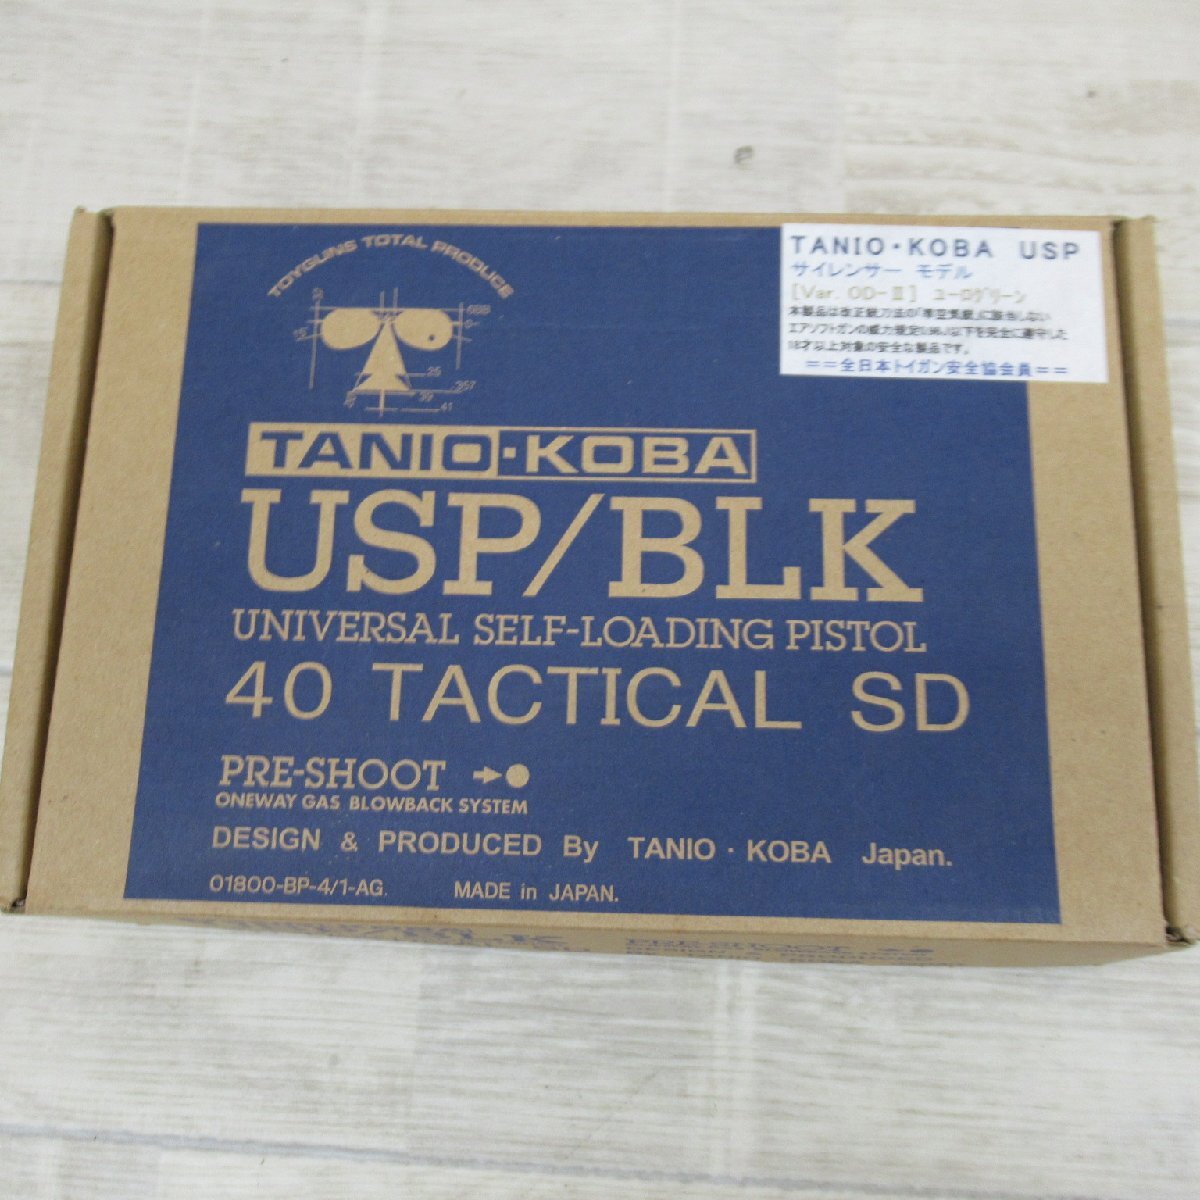 TC1118/TANIO KOBA USP/BLK サイレンサーモデル Ver OD-Ⅲ ユーログリーン 40 TACTICAL SD タニオ・コバ ブローバックサイレンサー_画像1